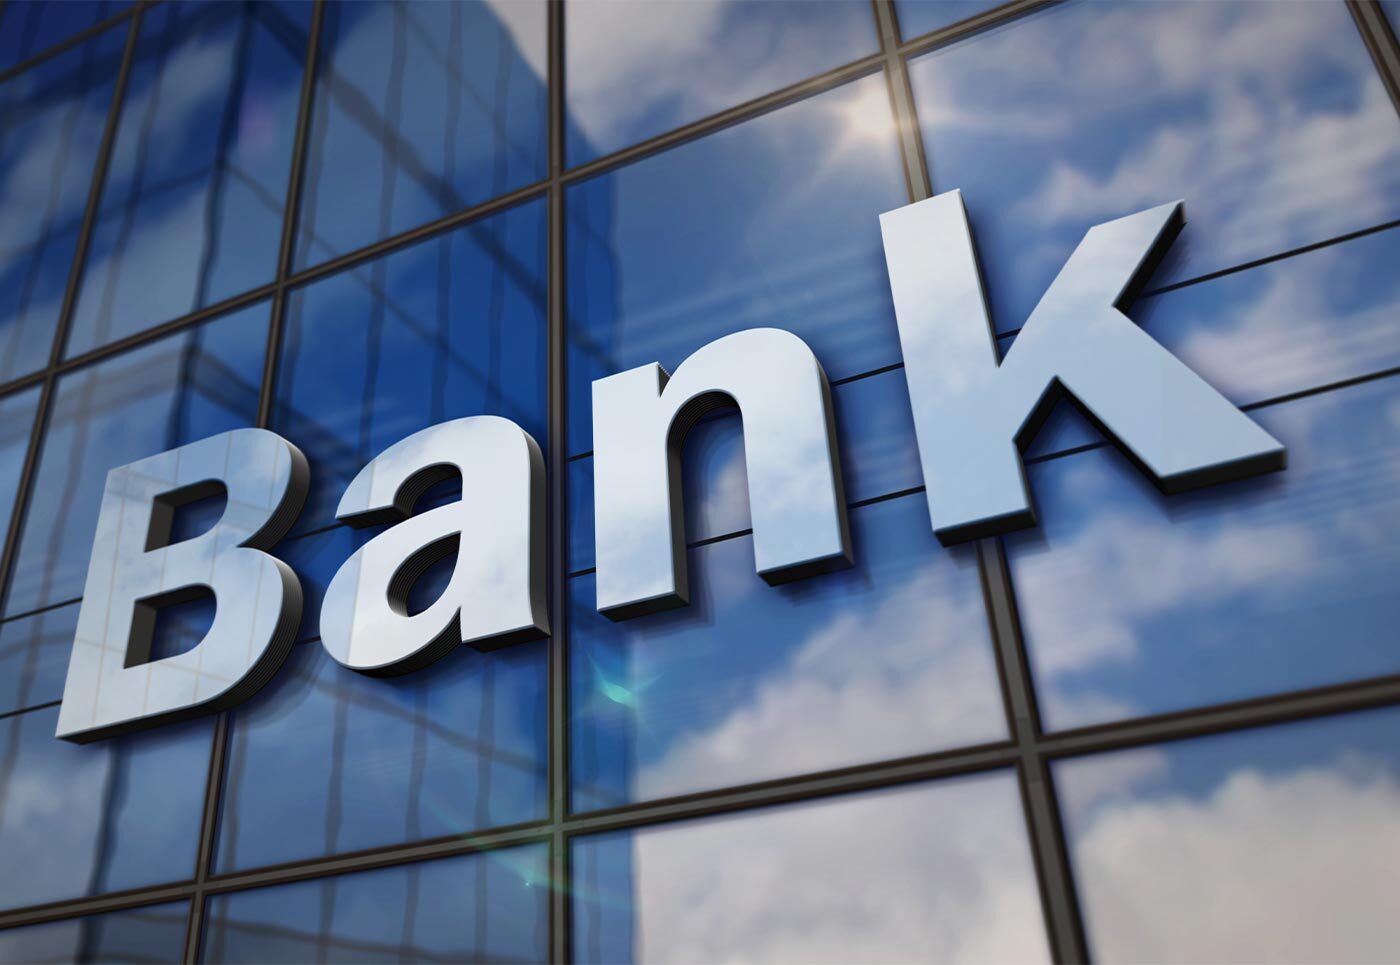 Наступного року в Україні зникне одразу декілька банків: що буде з вкладниками